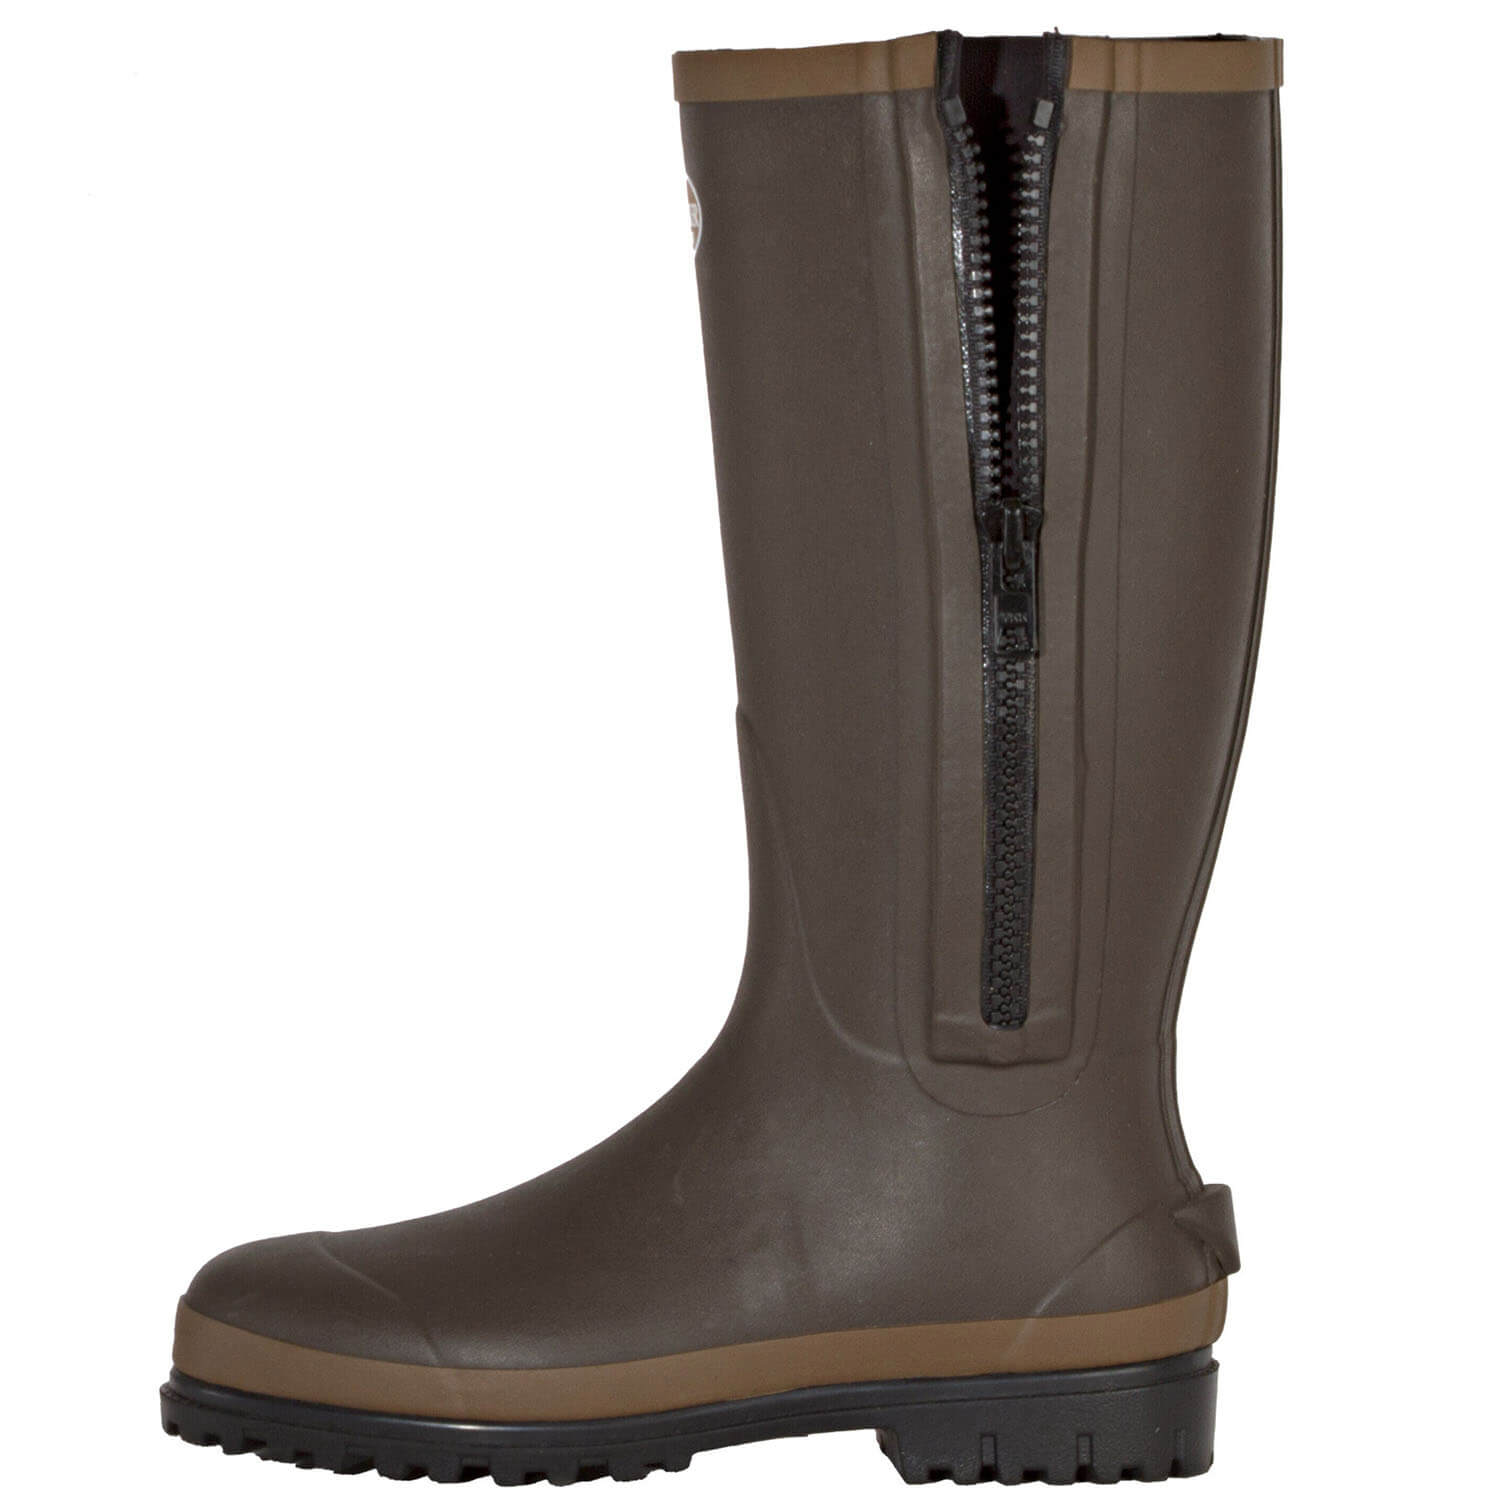 Tracker Rubber Boots Comfort Neopren (brown)